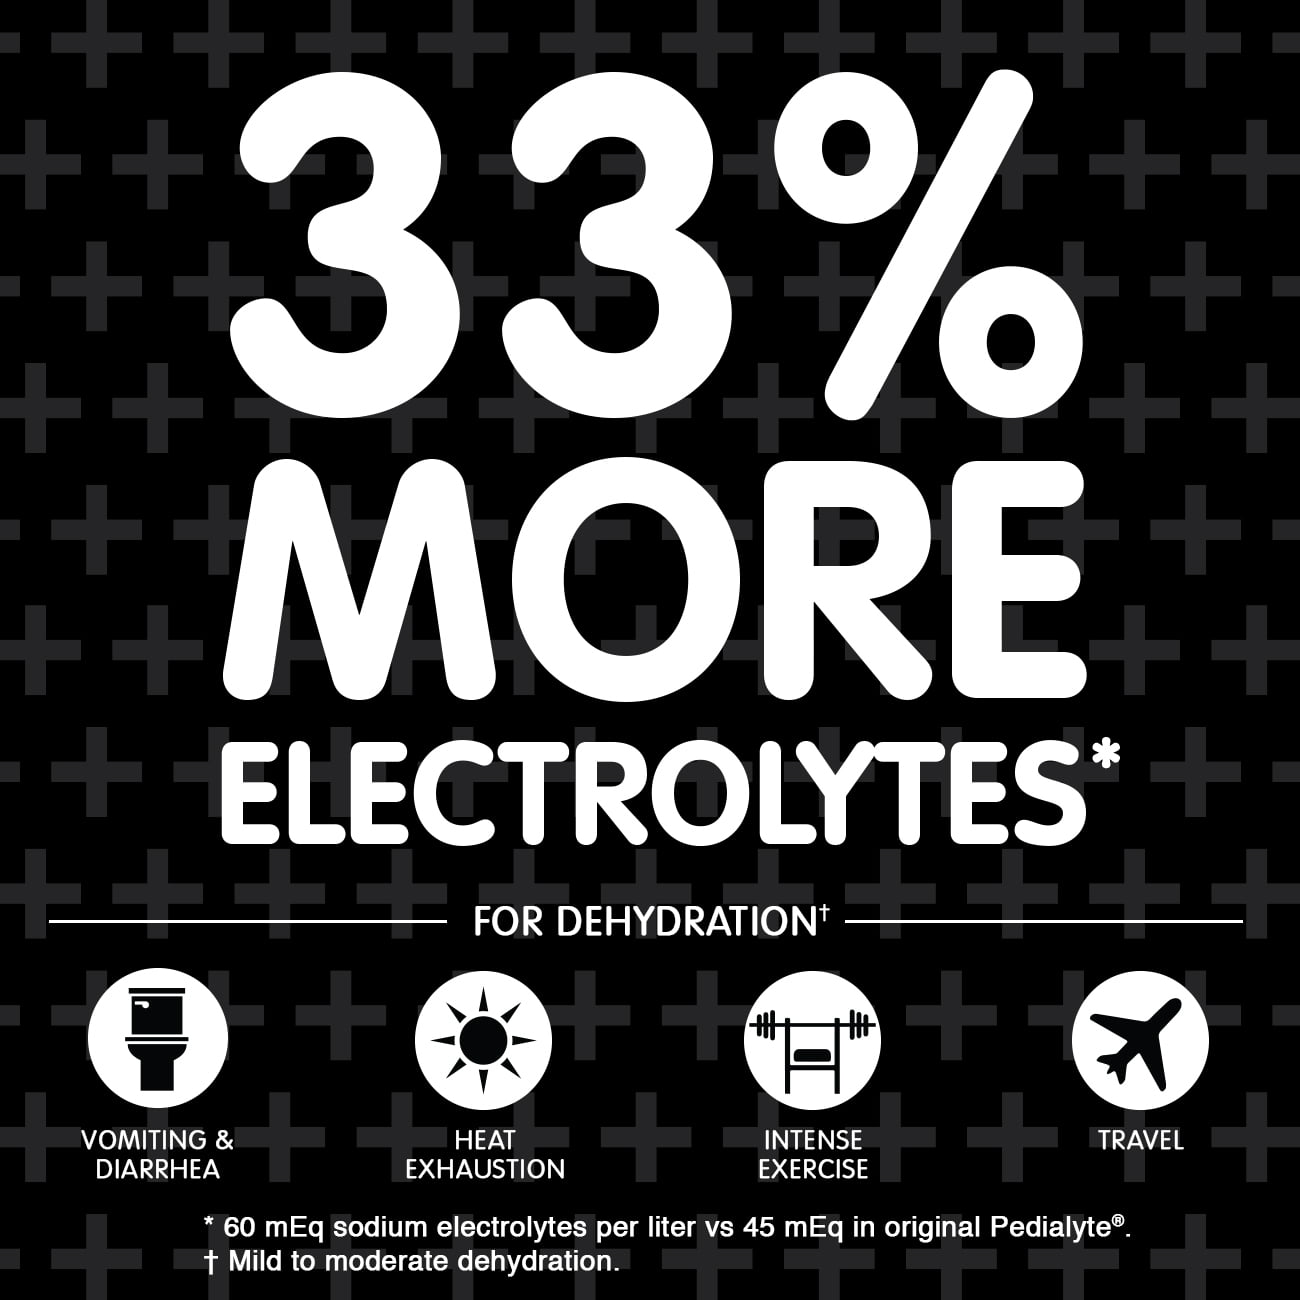 Pedialyte AdvancedCare Plus Electrolito en polvo, con 33% más de electrolitos y prebióticos PreActiv, Berry Frost, 6 unidades